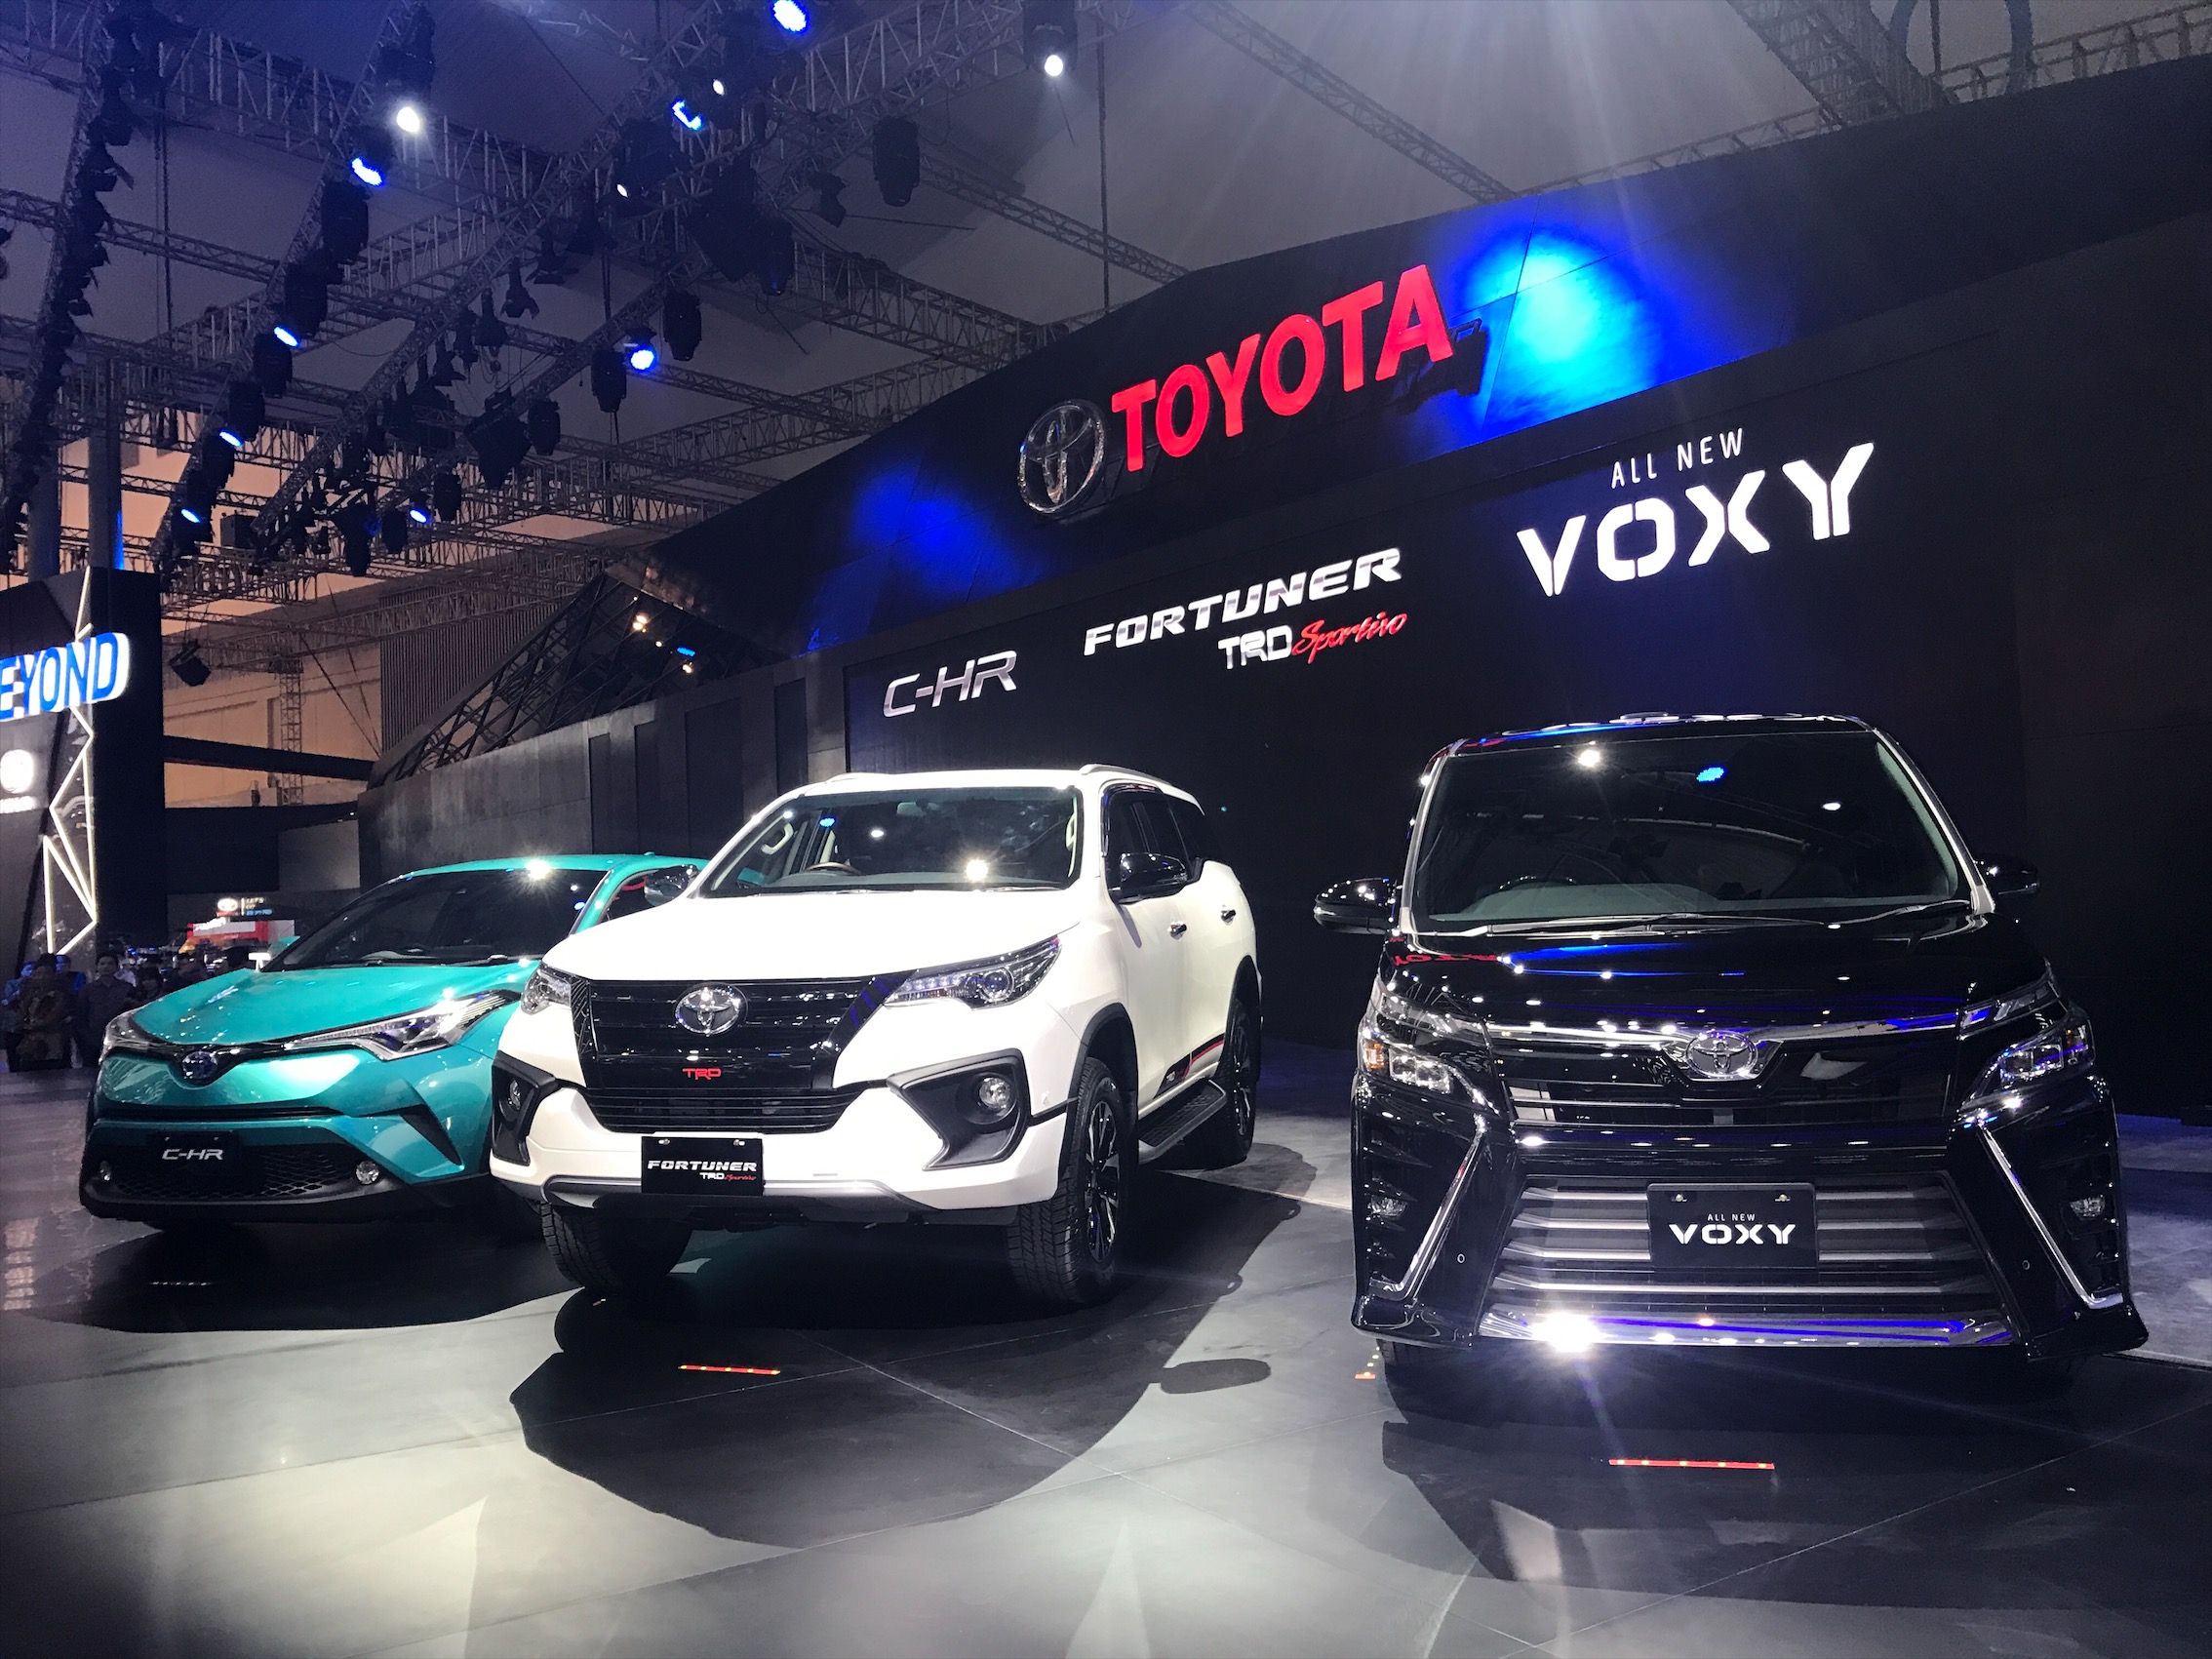 Modifikasi Toyota Fortuner Trd Sportivo - Modifretro